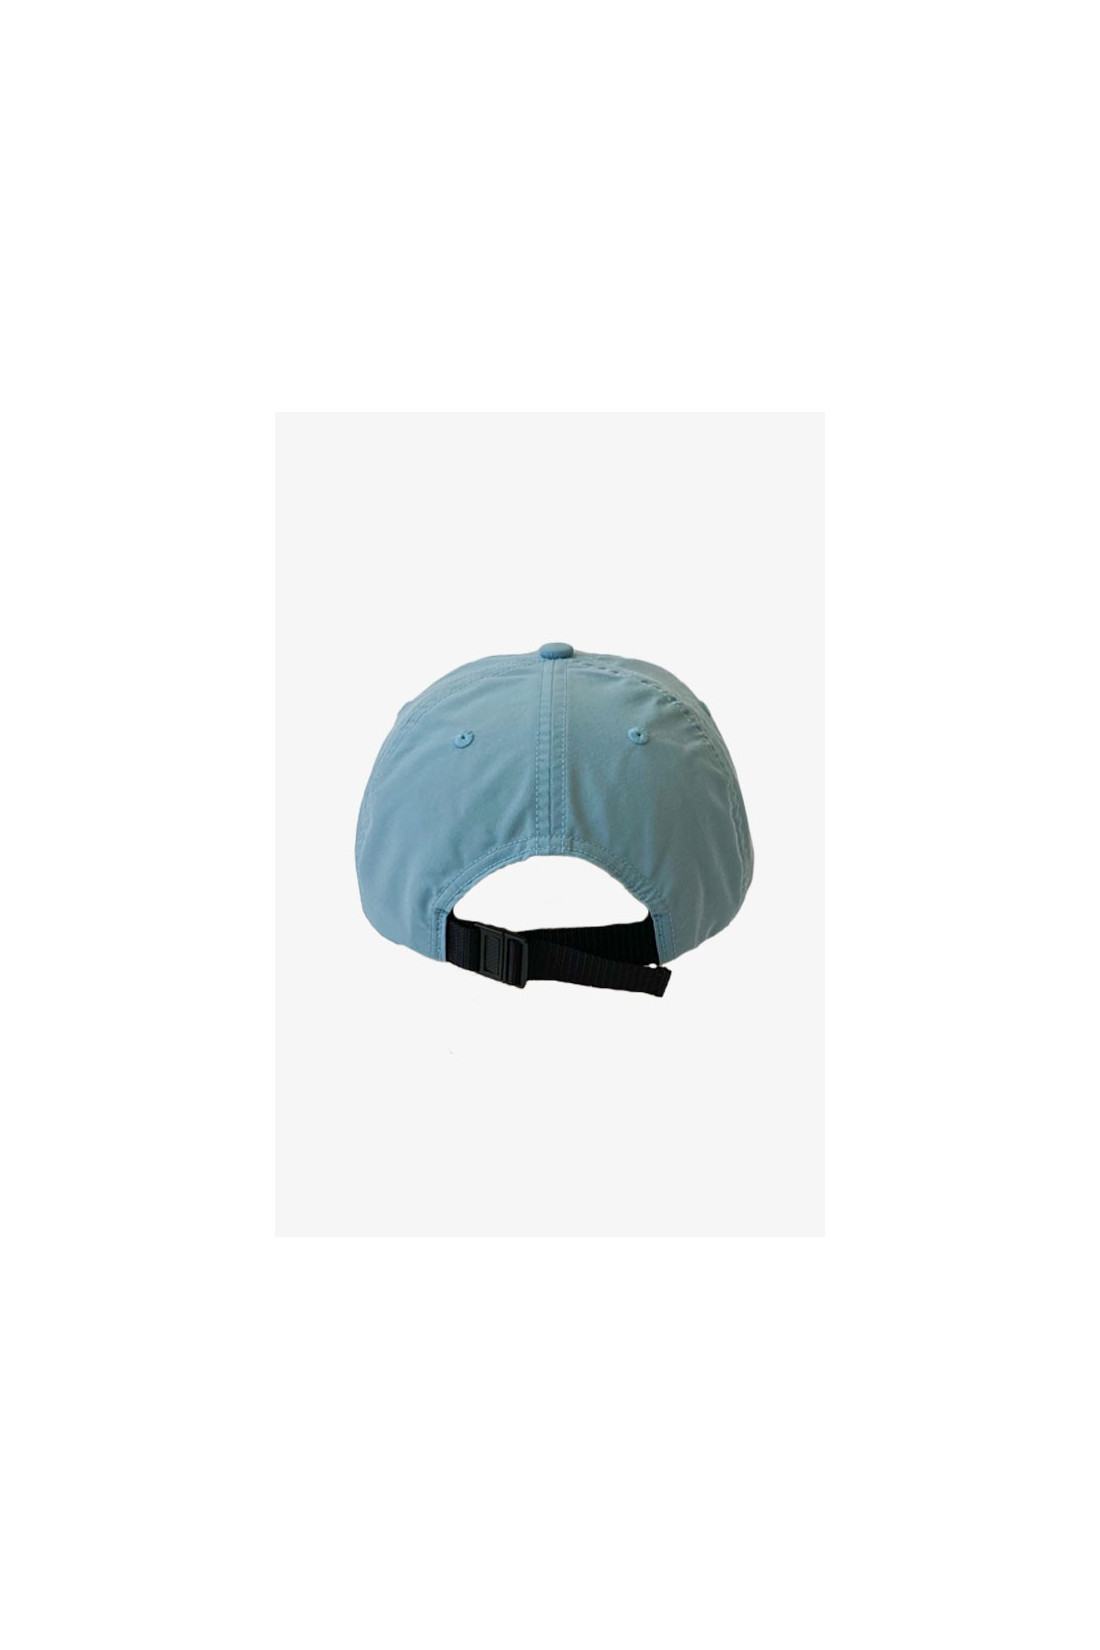 BATTENWEAR / Nylon field cap Powder blue